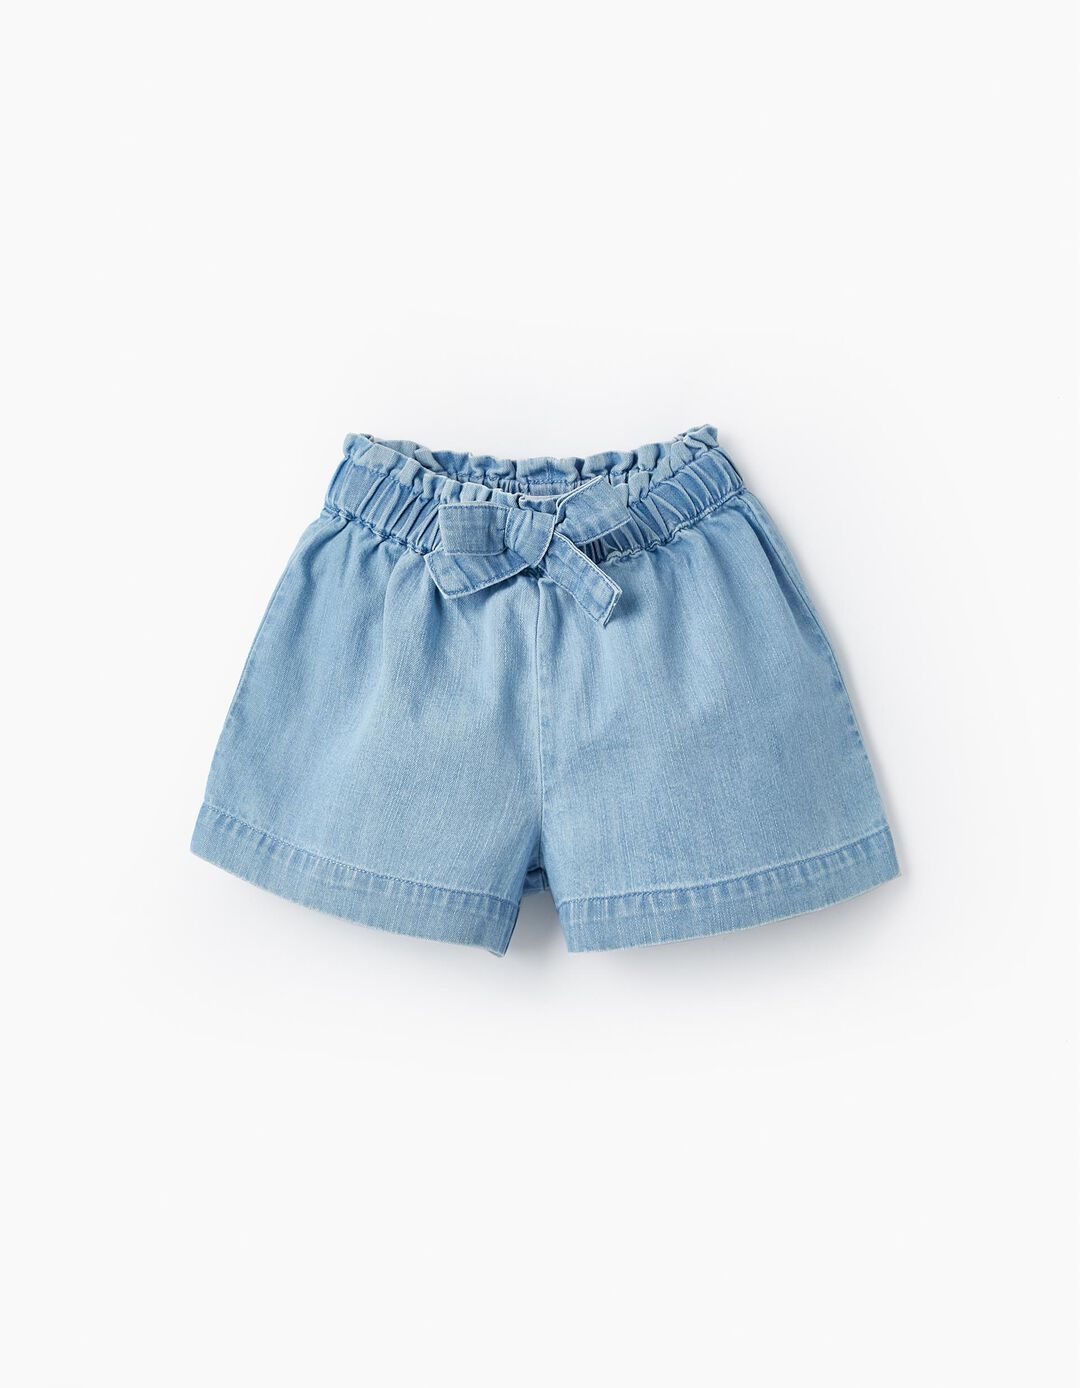 Denim Paperbag Shorts for Baby Girls, Light Blue